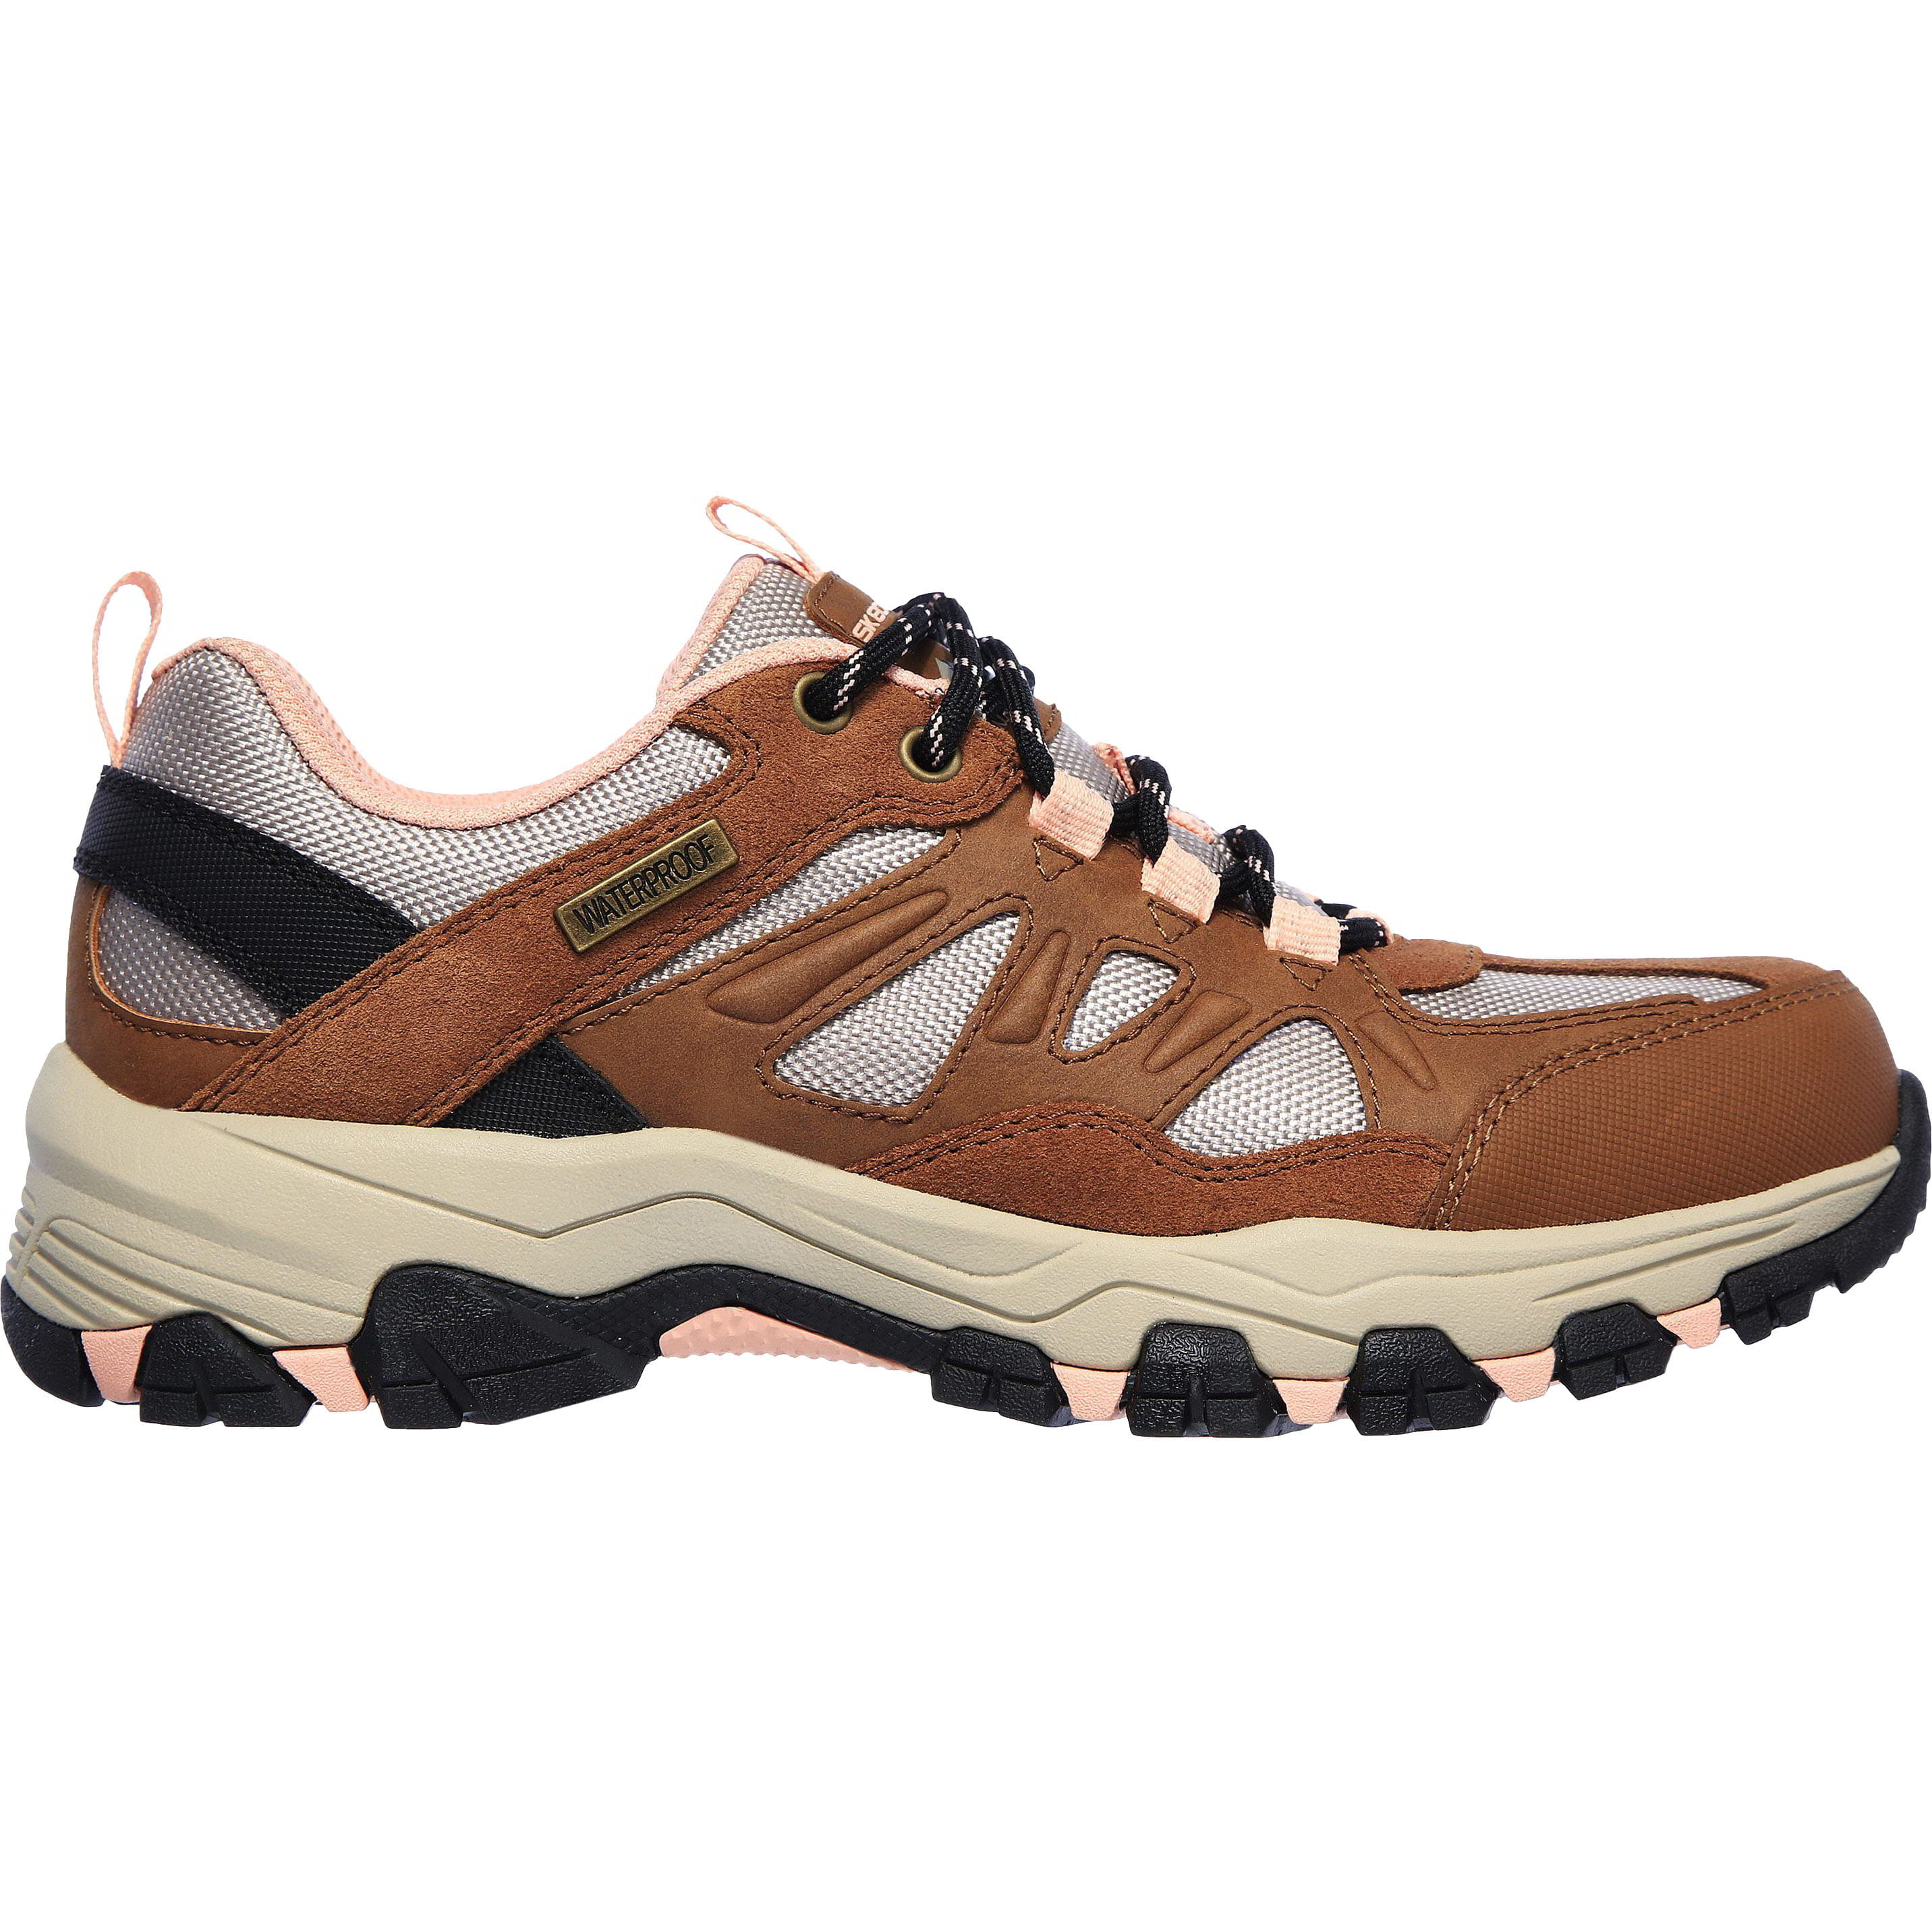 Skechers Womens Selment West Highland Waterproof Walking Shoes Trainers - UK 5 Brown 2951